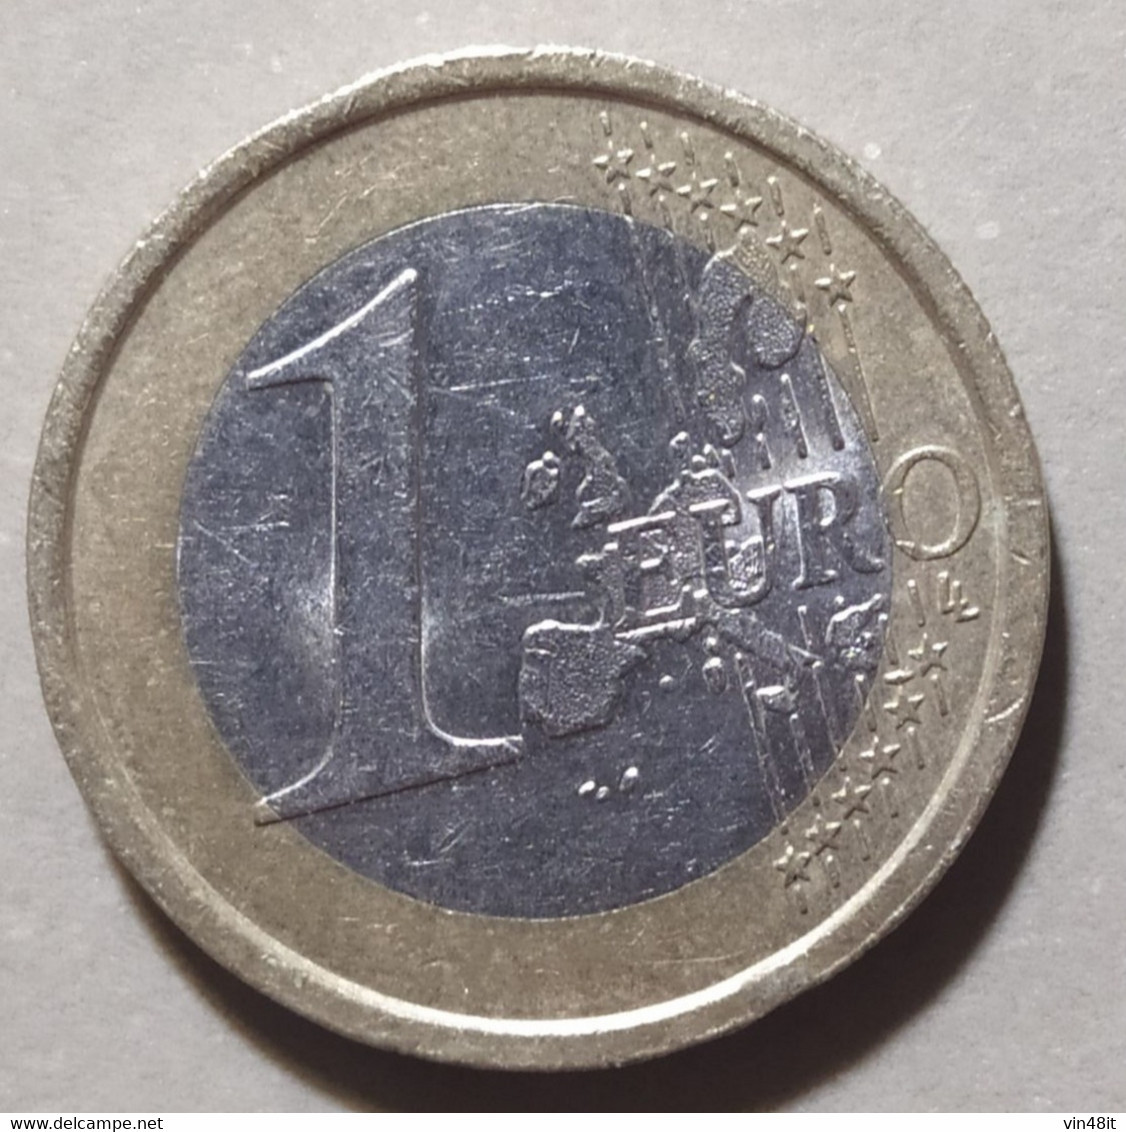 2003 - ITALIA  REPUBBLICA  - MONETA IN EURO  -  DEL VALORE DI 1  EURO - USATA - - Italien